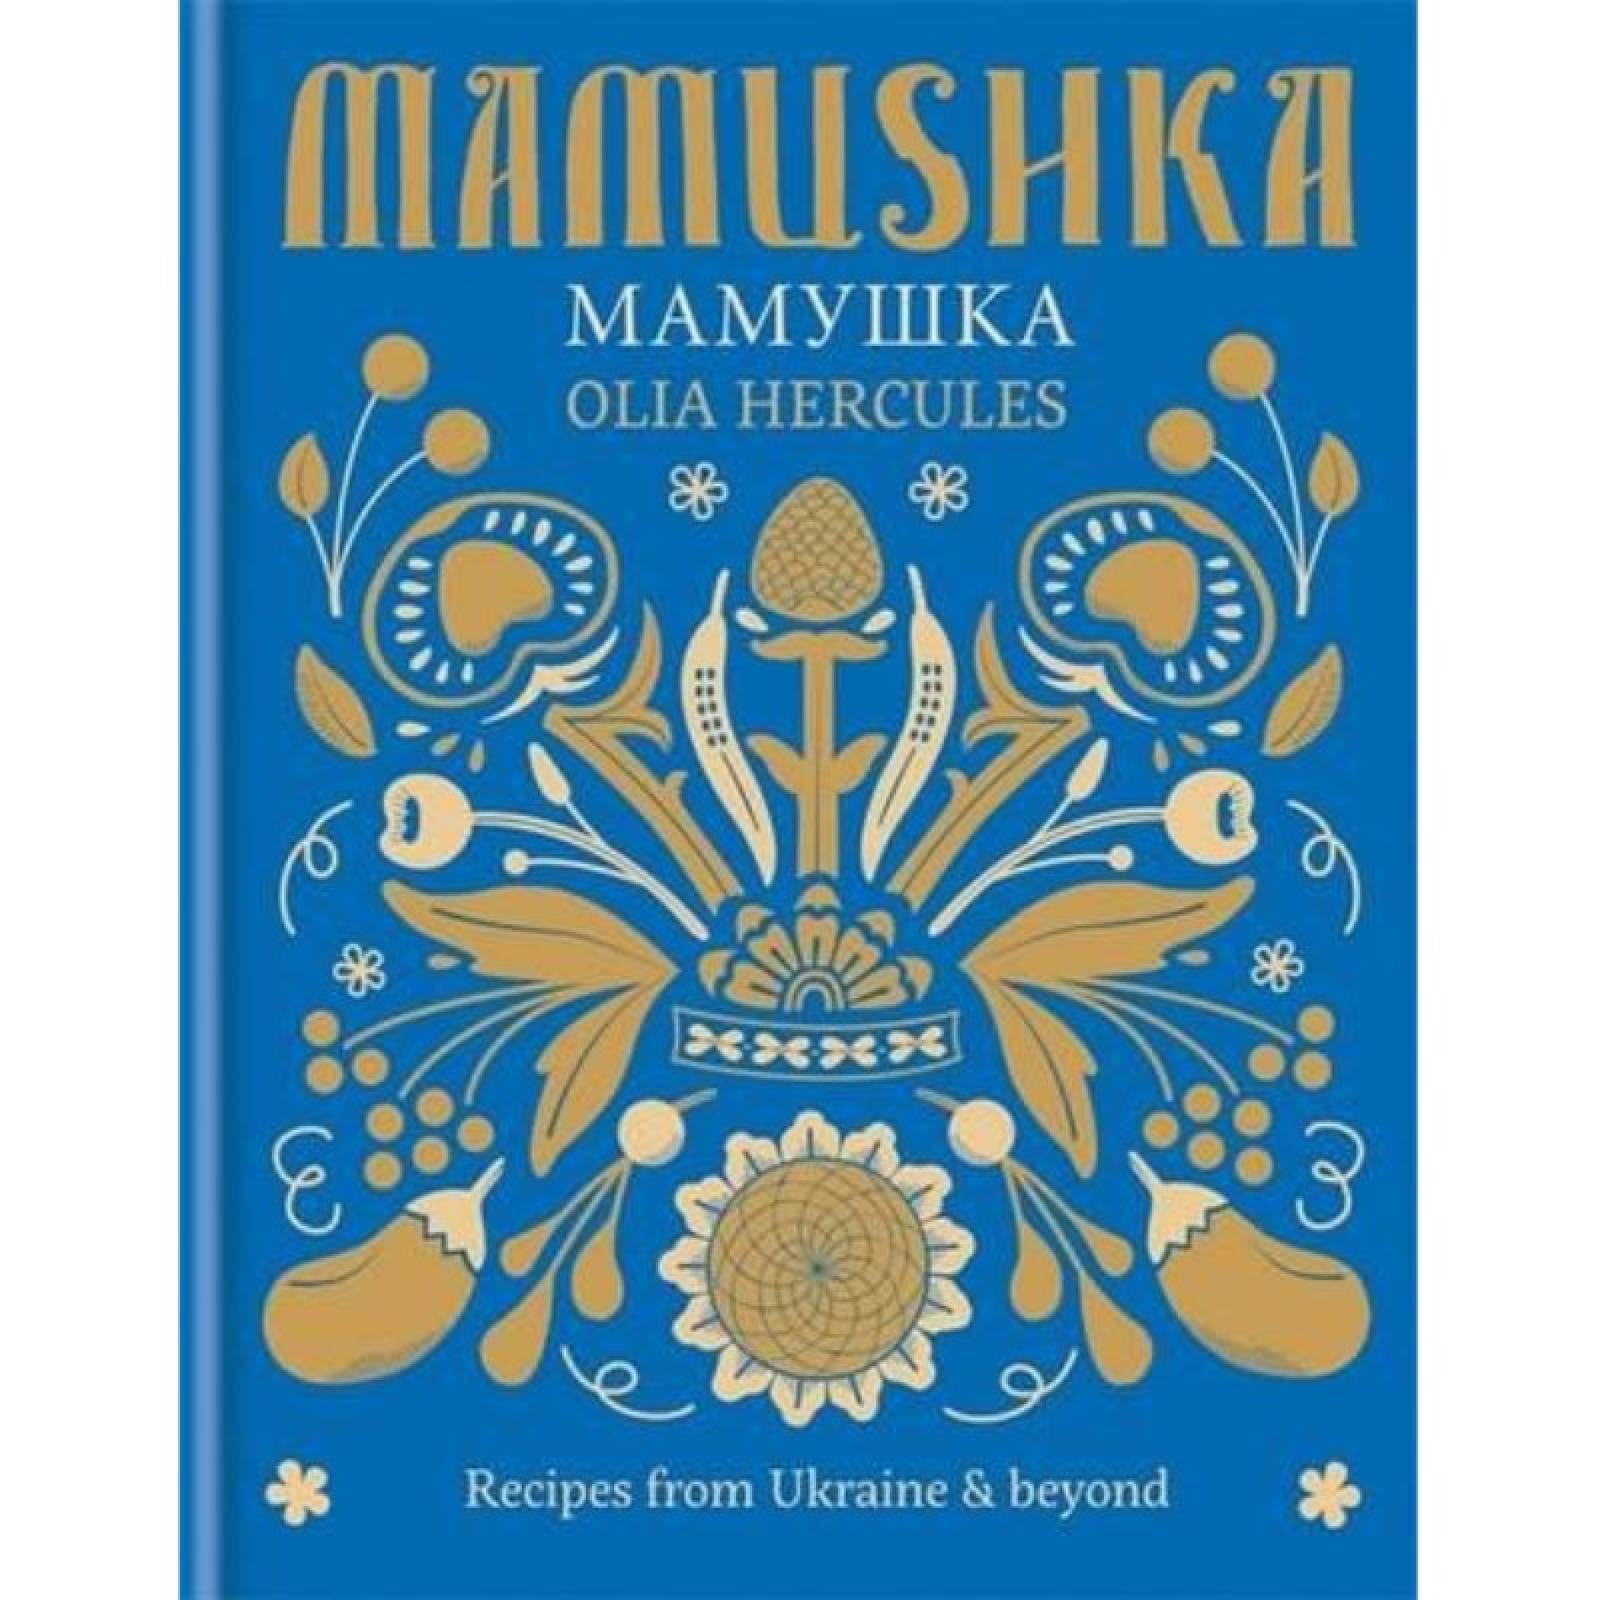 Mamushka By Olia Hercules - Hardback Book